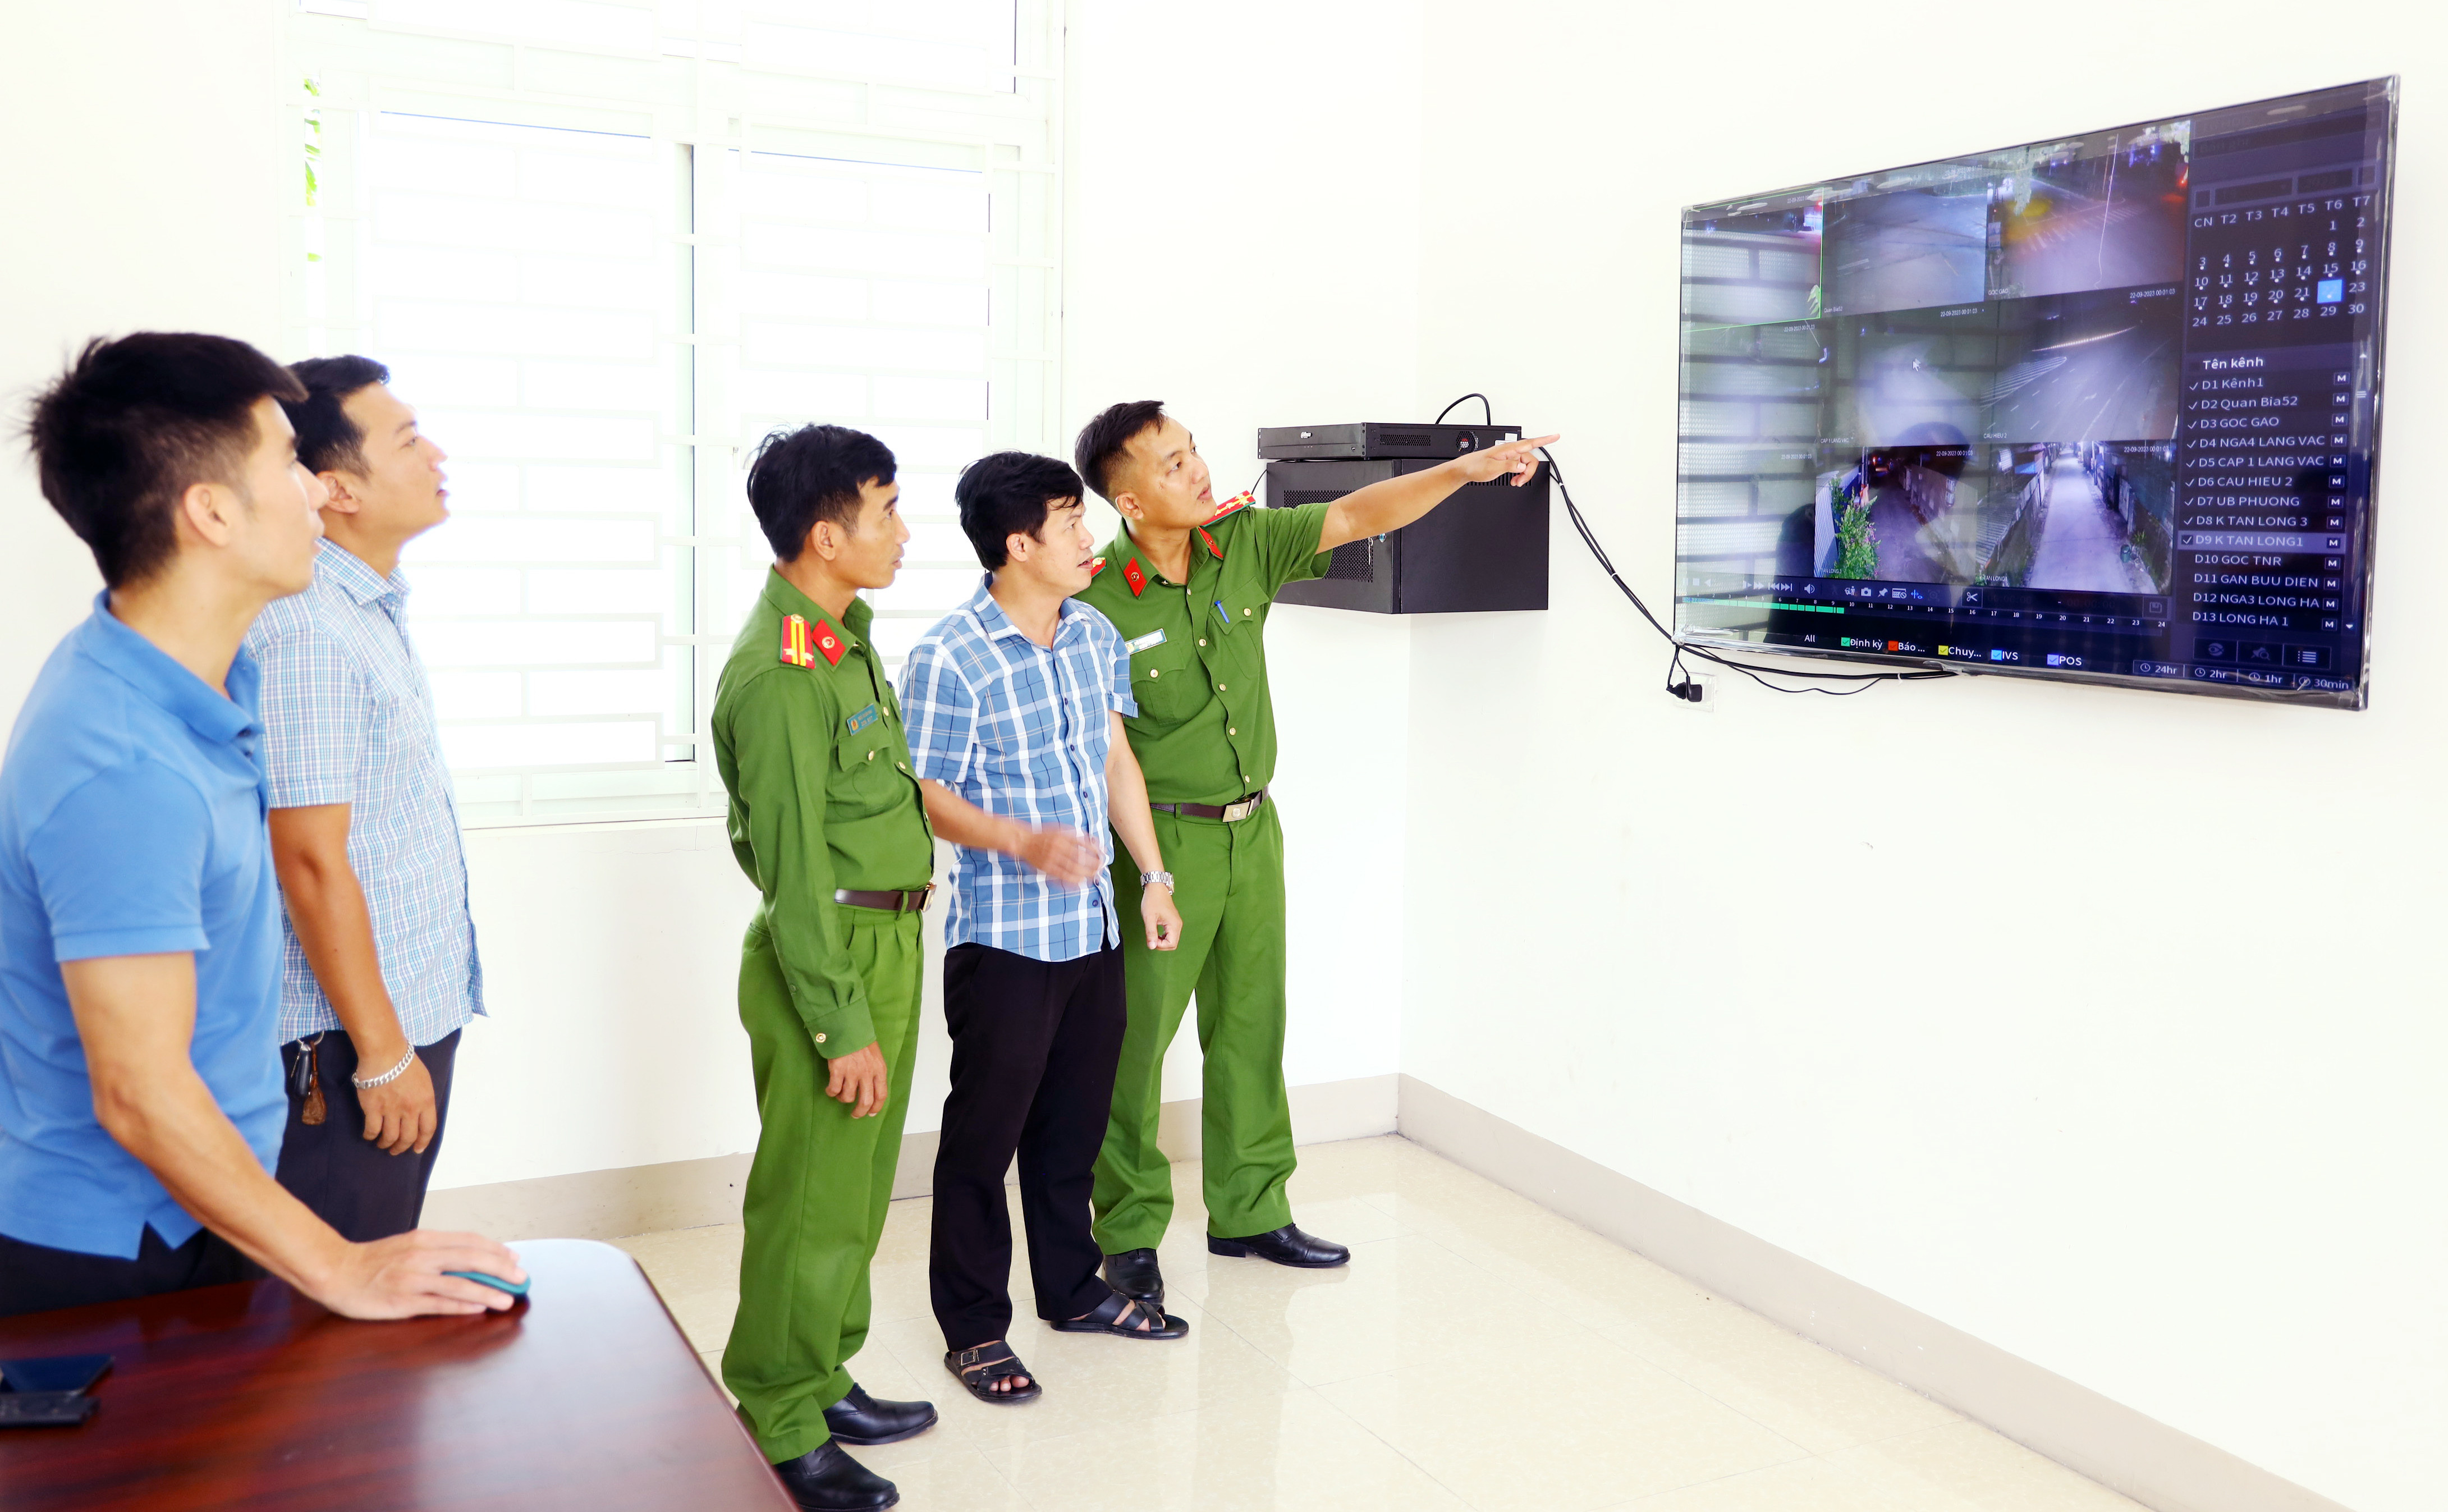 BNA_Lãnh đạo phường Long Sơn-TX Thái Hòa cùng lực lượng công an kiểm tra hệ thống camera an ninh. ảnh NN.JPG